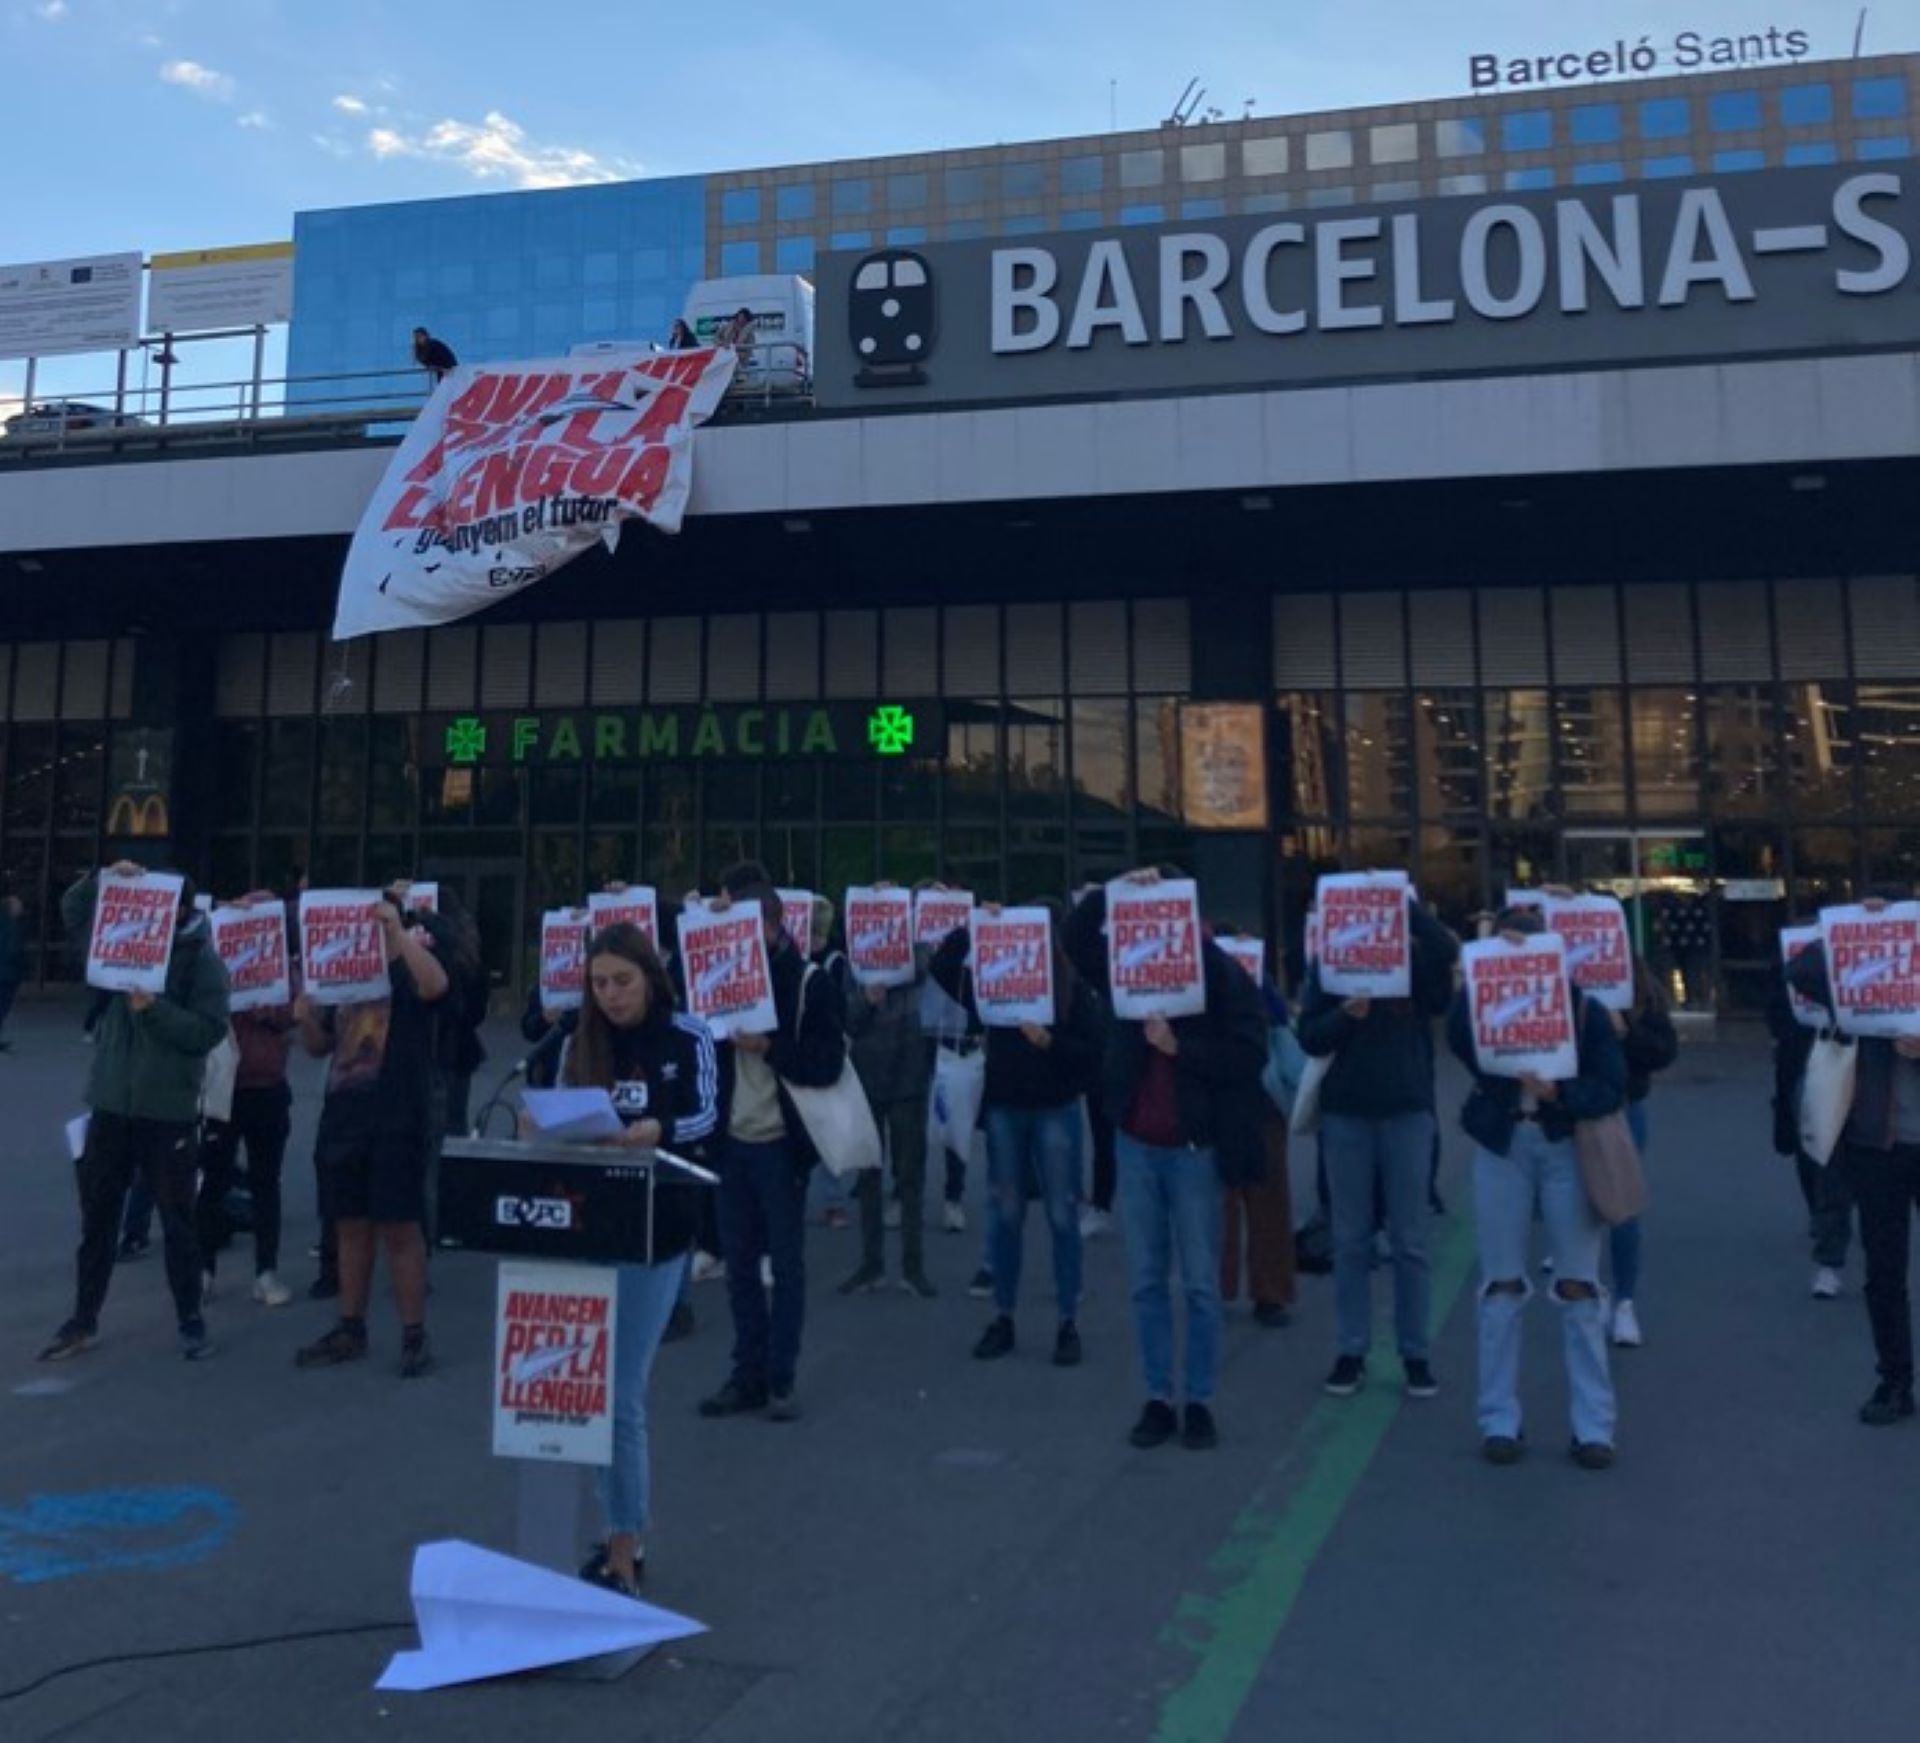 El SEPC omple l’estació de Sants de Barcelona amb avions de paper per defensar el català | VÍDEO